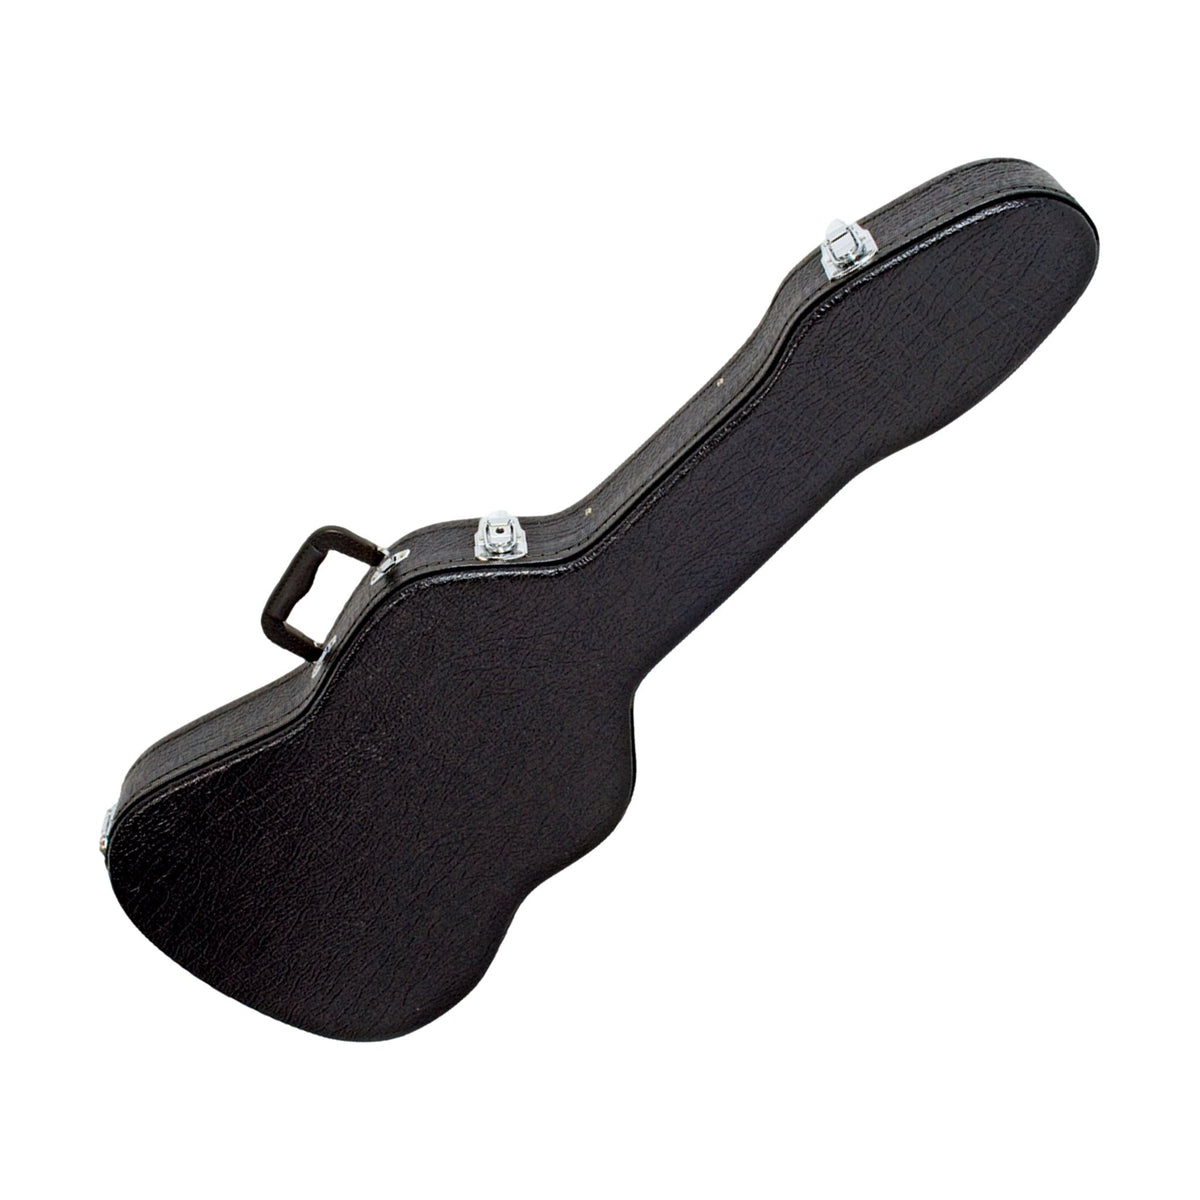 V-Case Guitar Hardcase for Strat or Tele